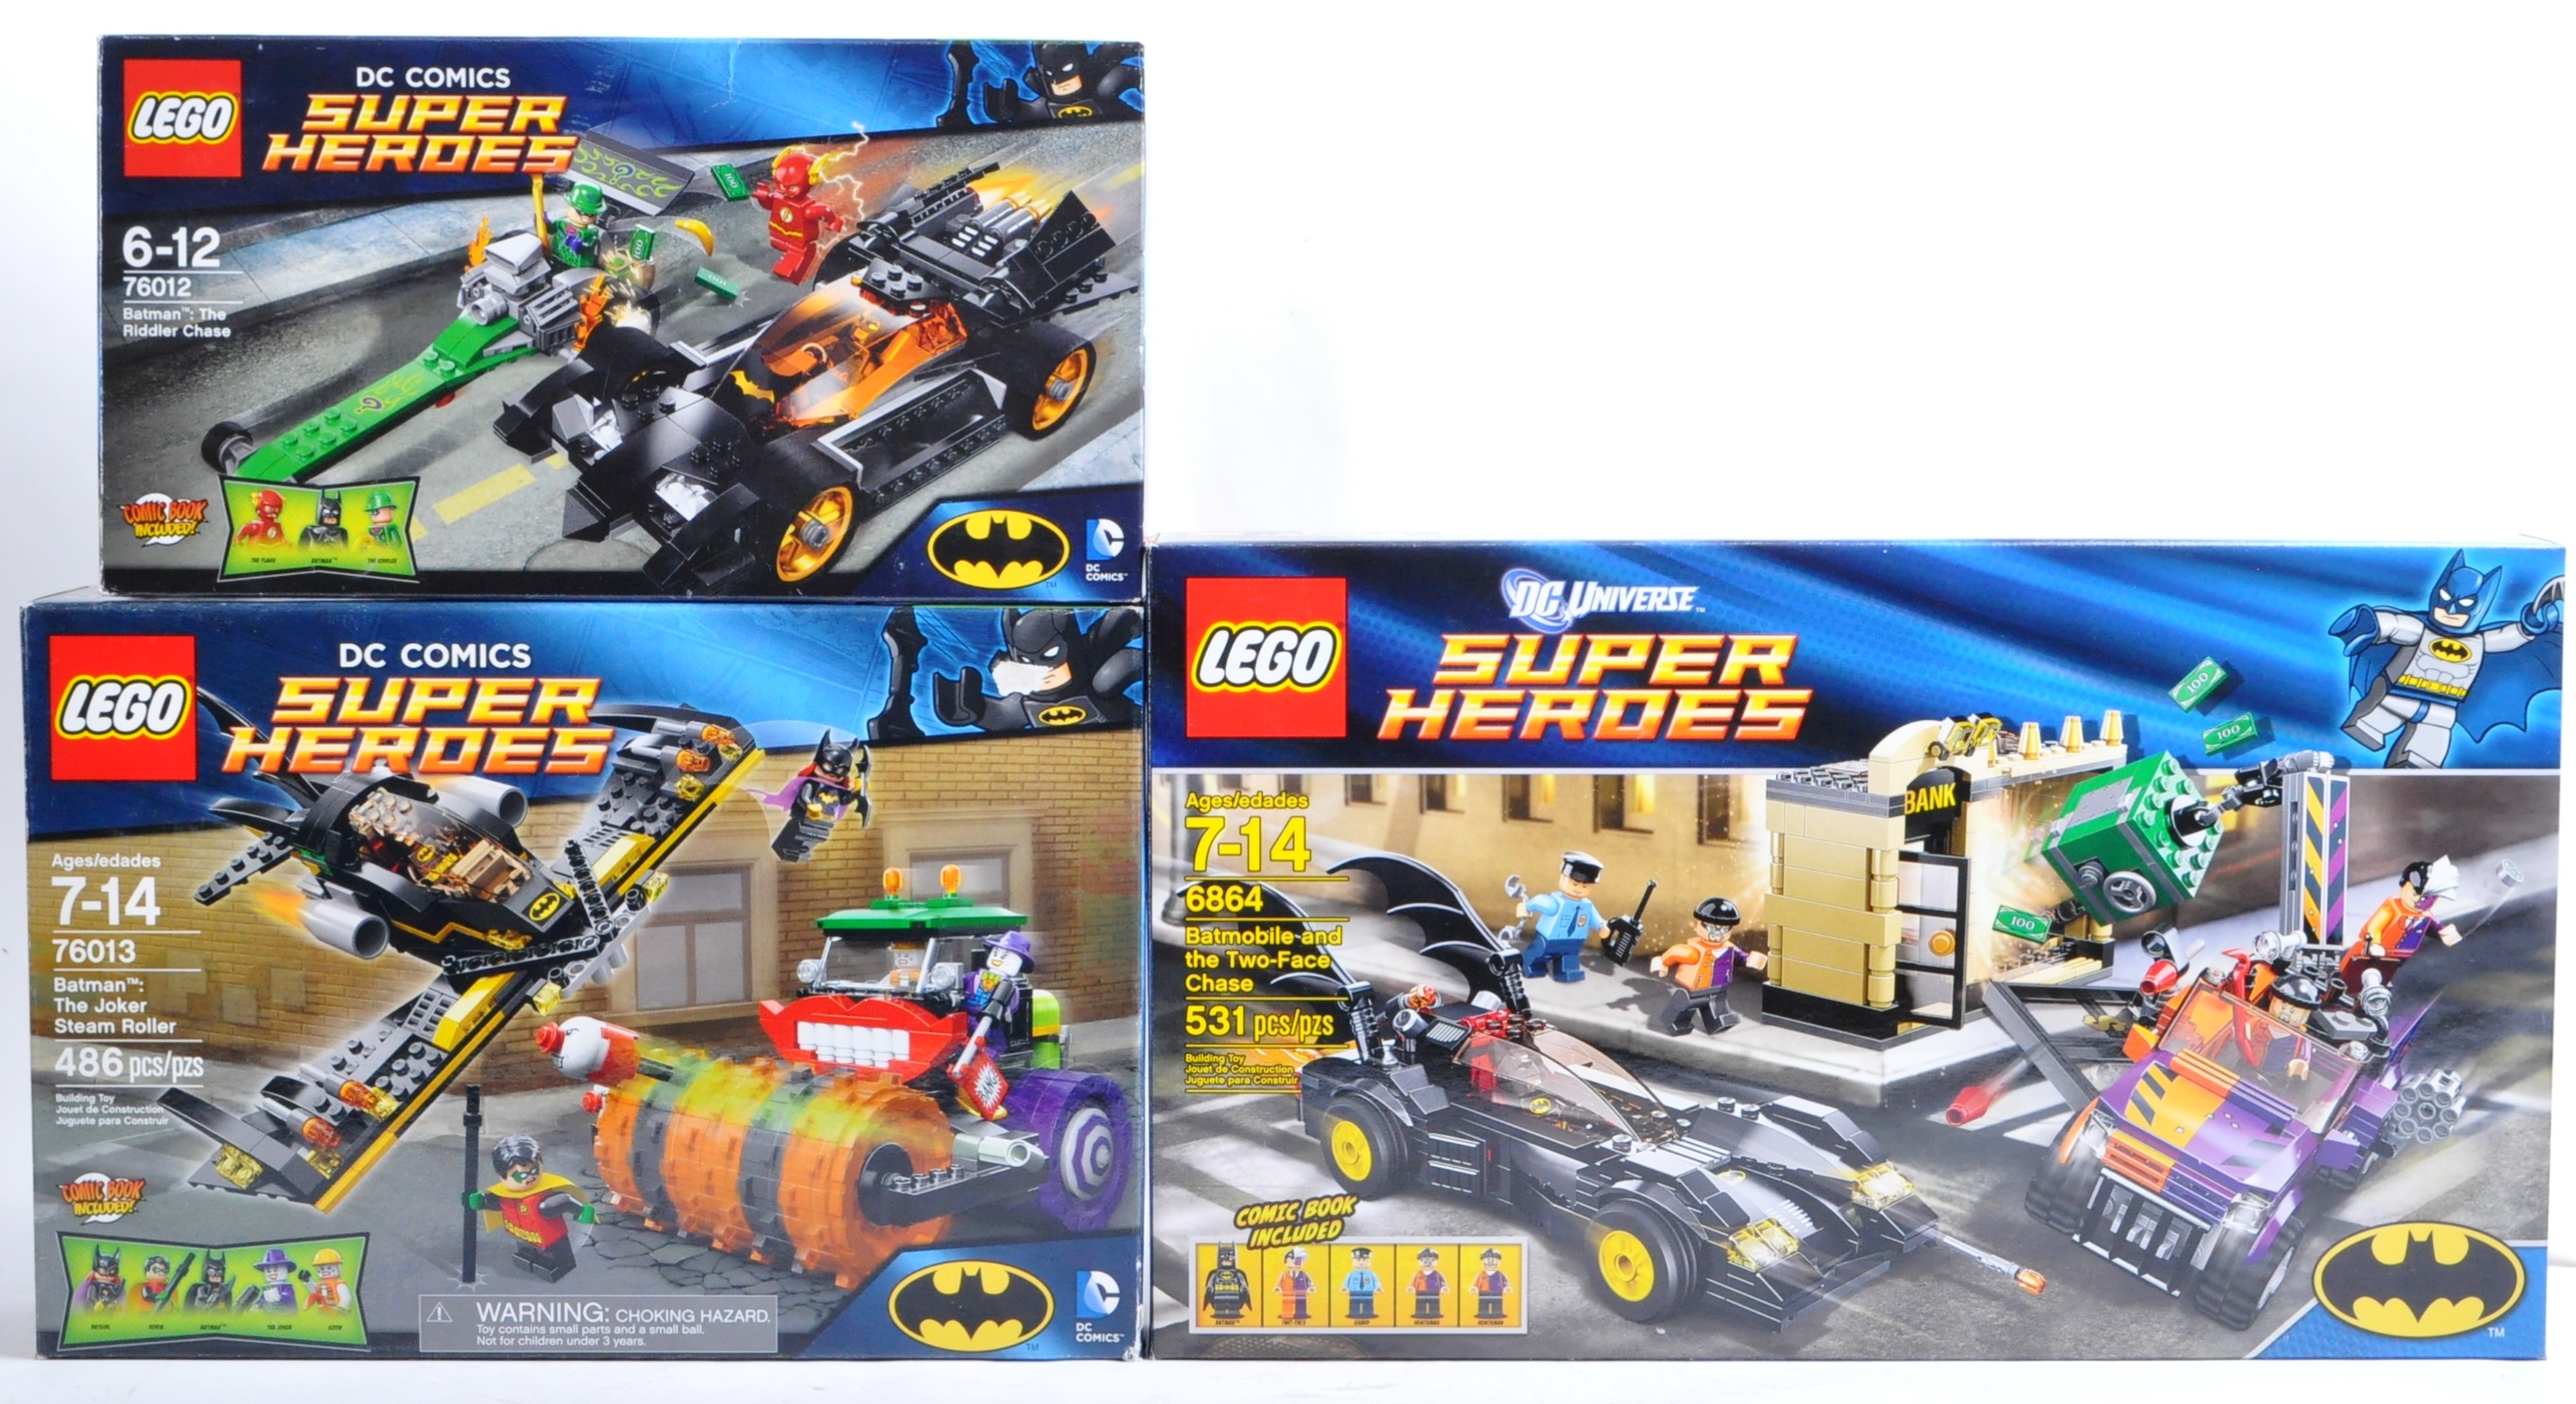 LEGO SETS - LEGO DC COMICS SUPERHEROES - 6864 / 76012 / 76013